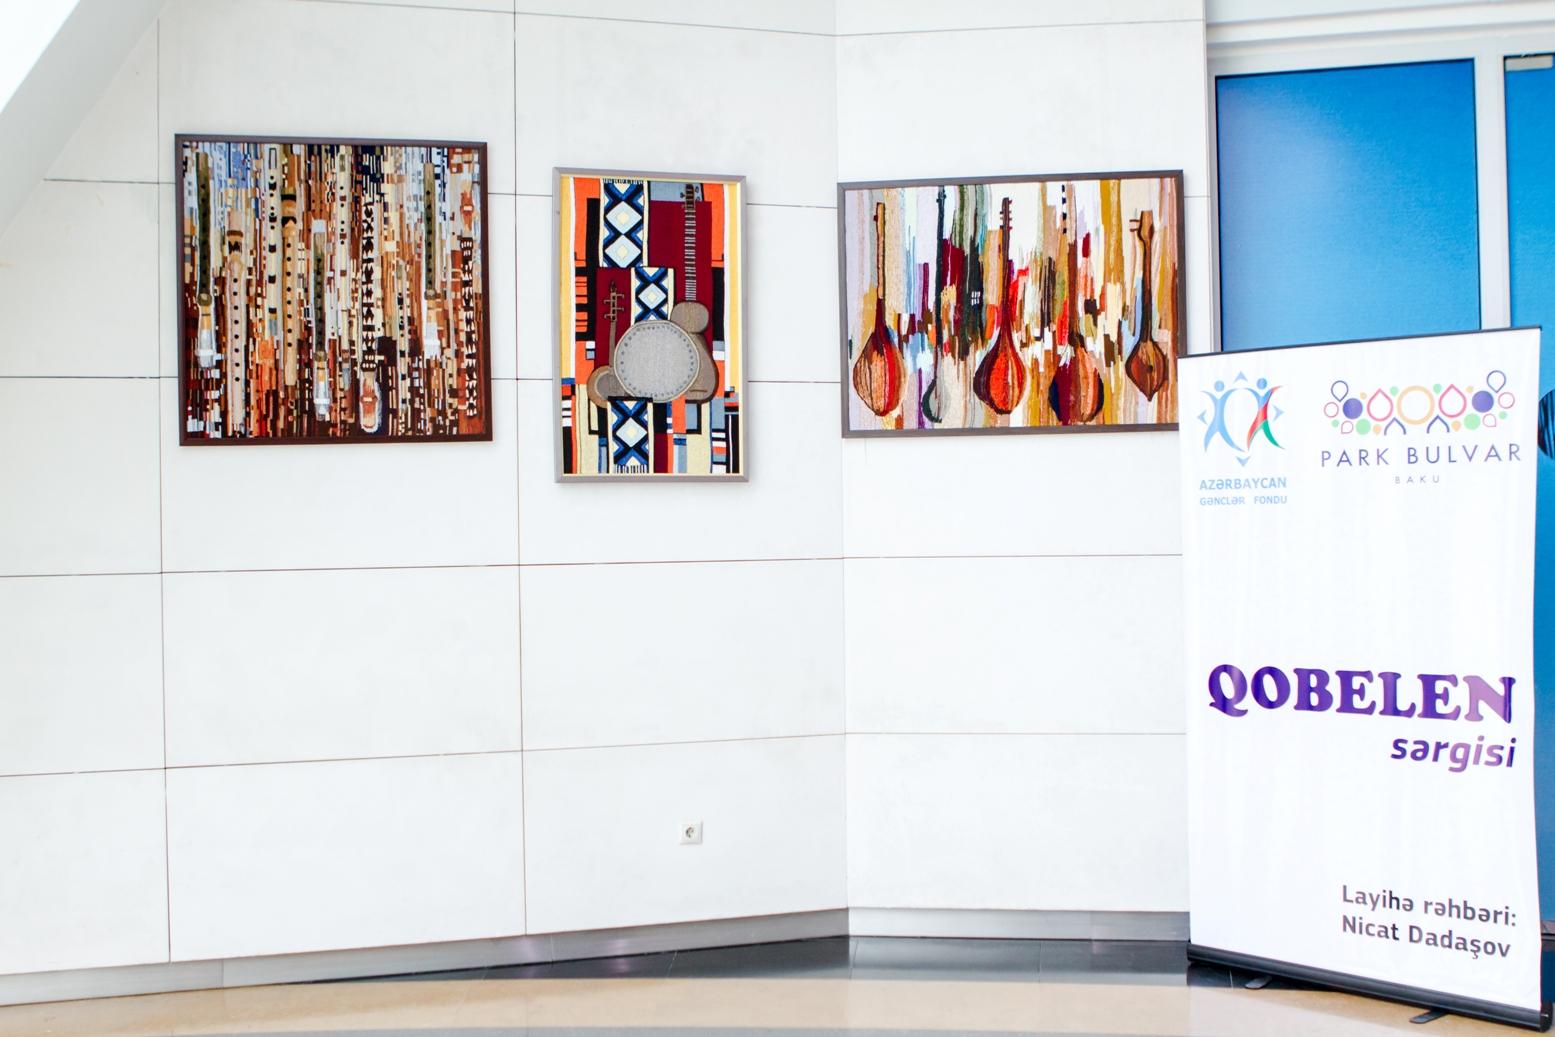 В Баку прошла выставка гобеленов "Национальные музыкальные инструменты" (ФОТО)